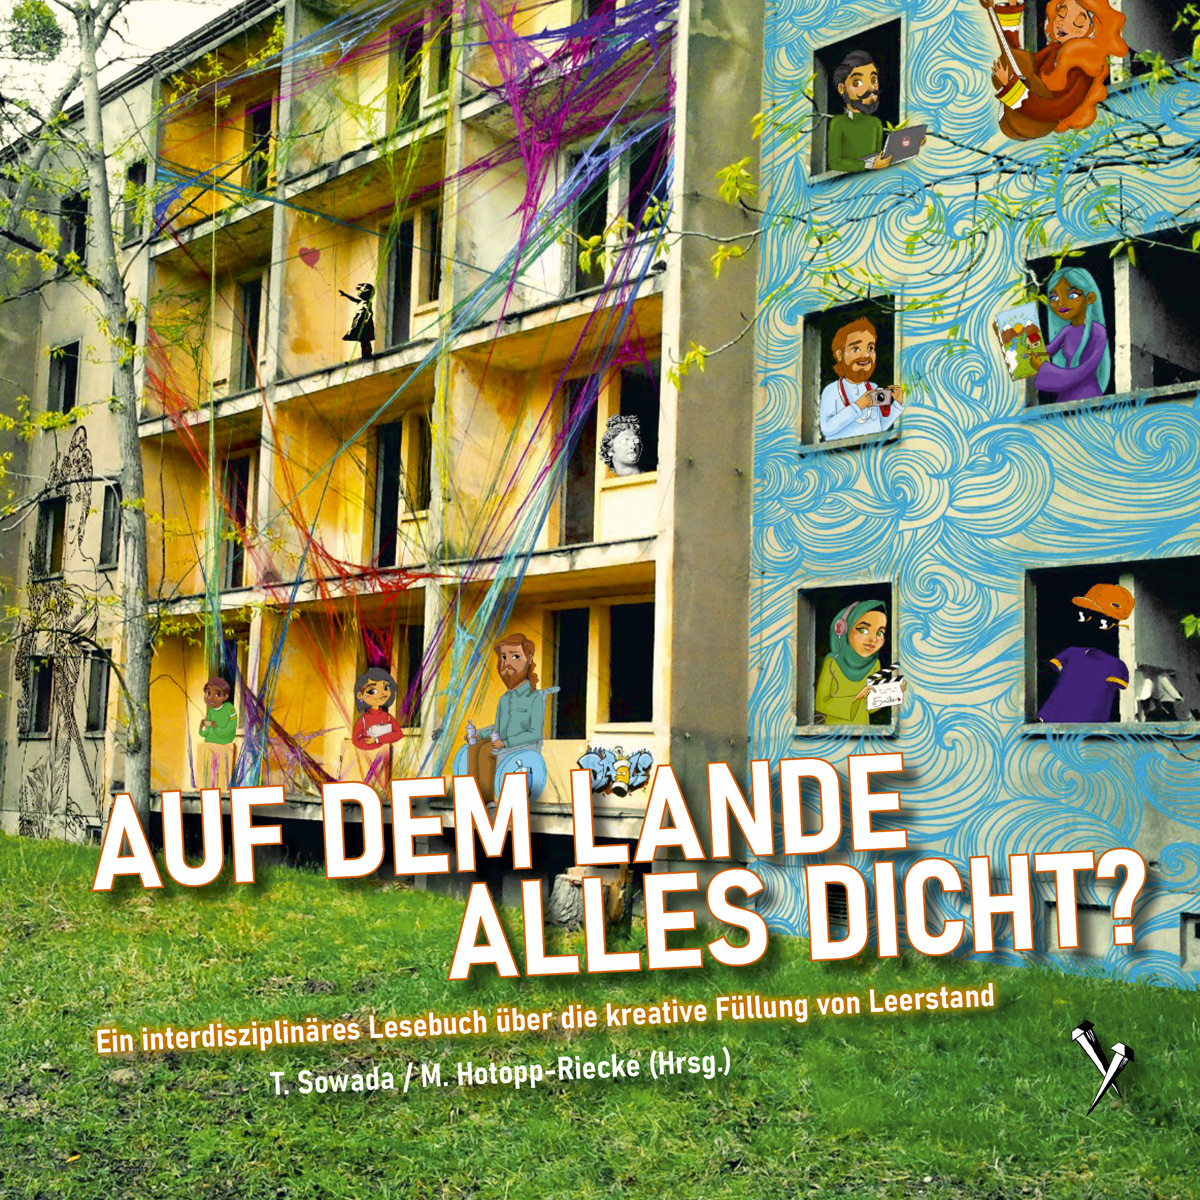 Cover vom Buch "Auf dem Lande alles dicht? - Ein interdisziplinäres Lesebuch über die kreative Füllung von Leerstand"